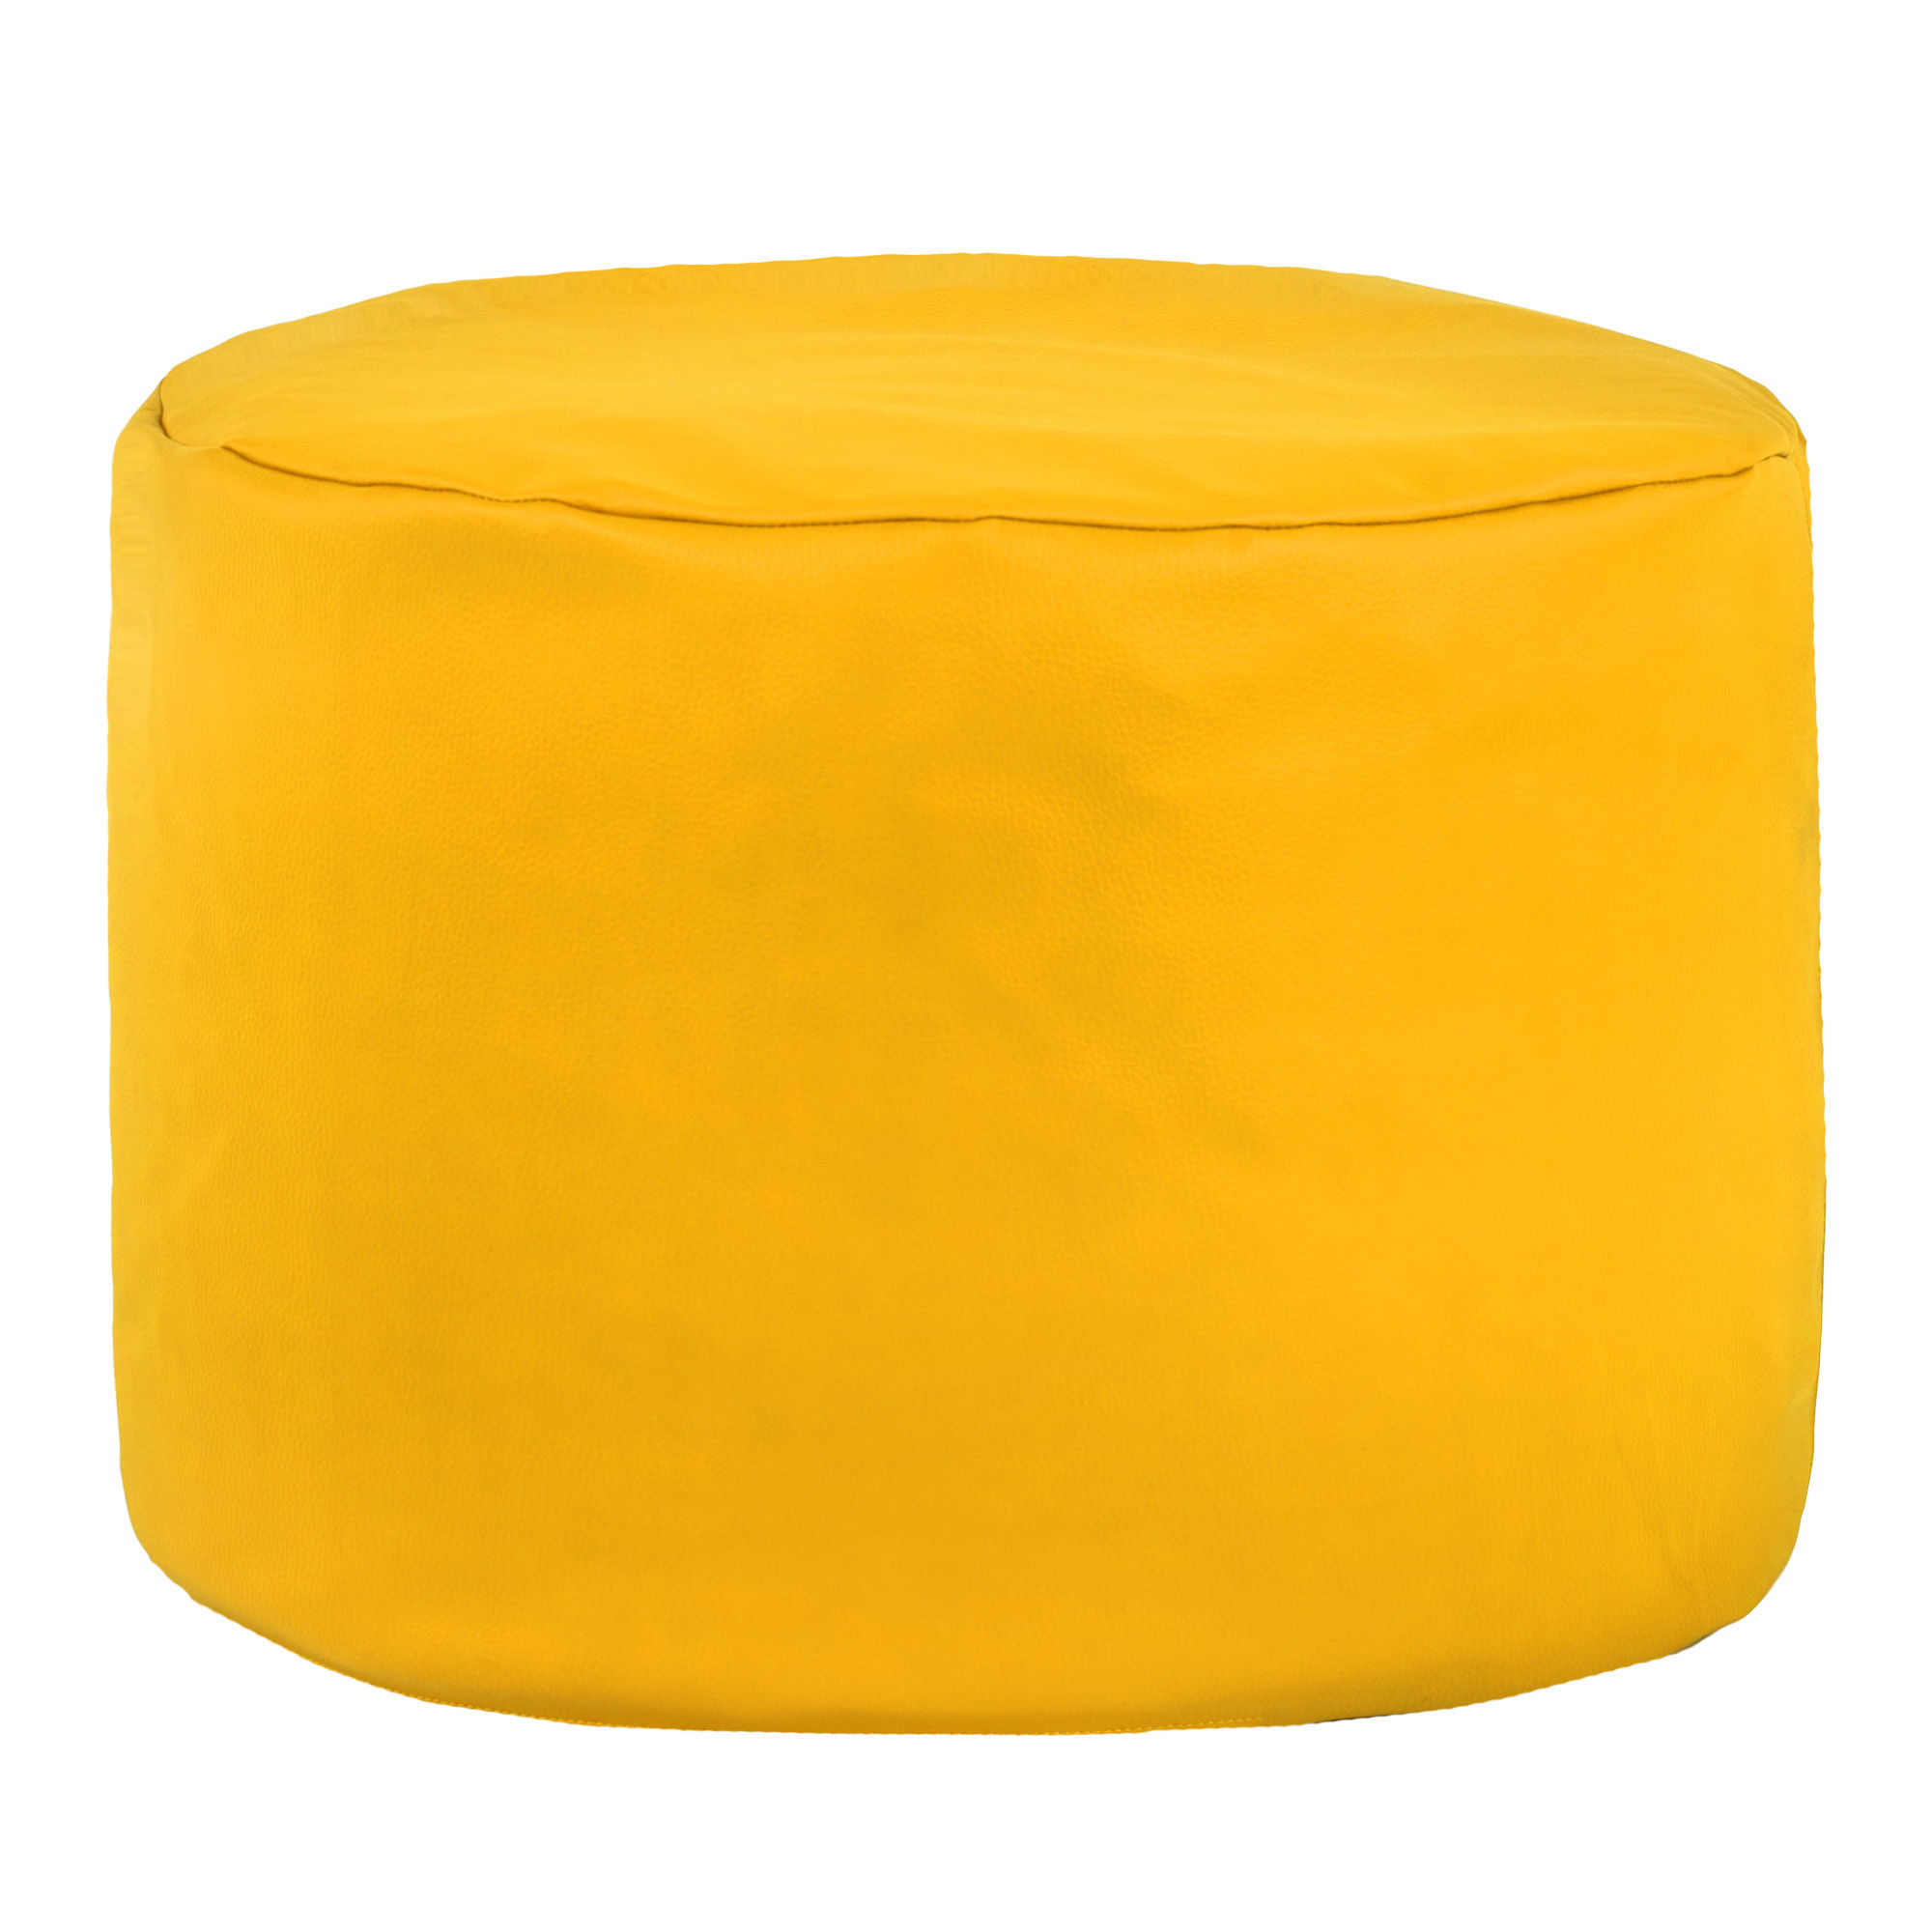 Pouf da soggiorno ecopelle certificata giallo. Pouf carino per bambini